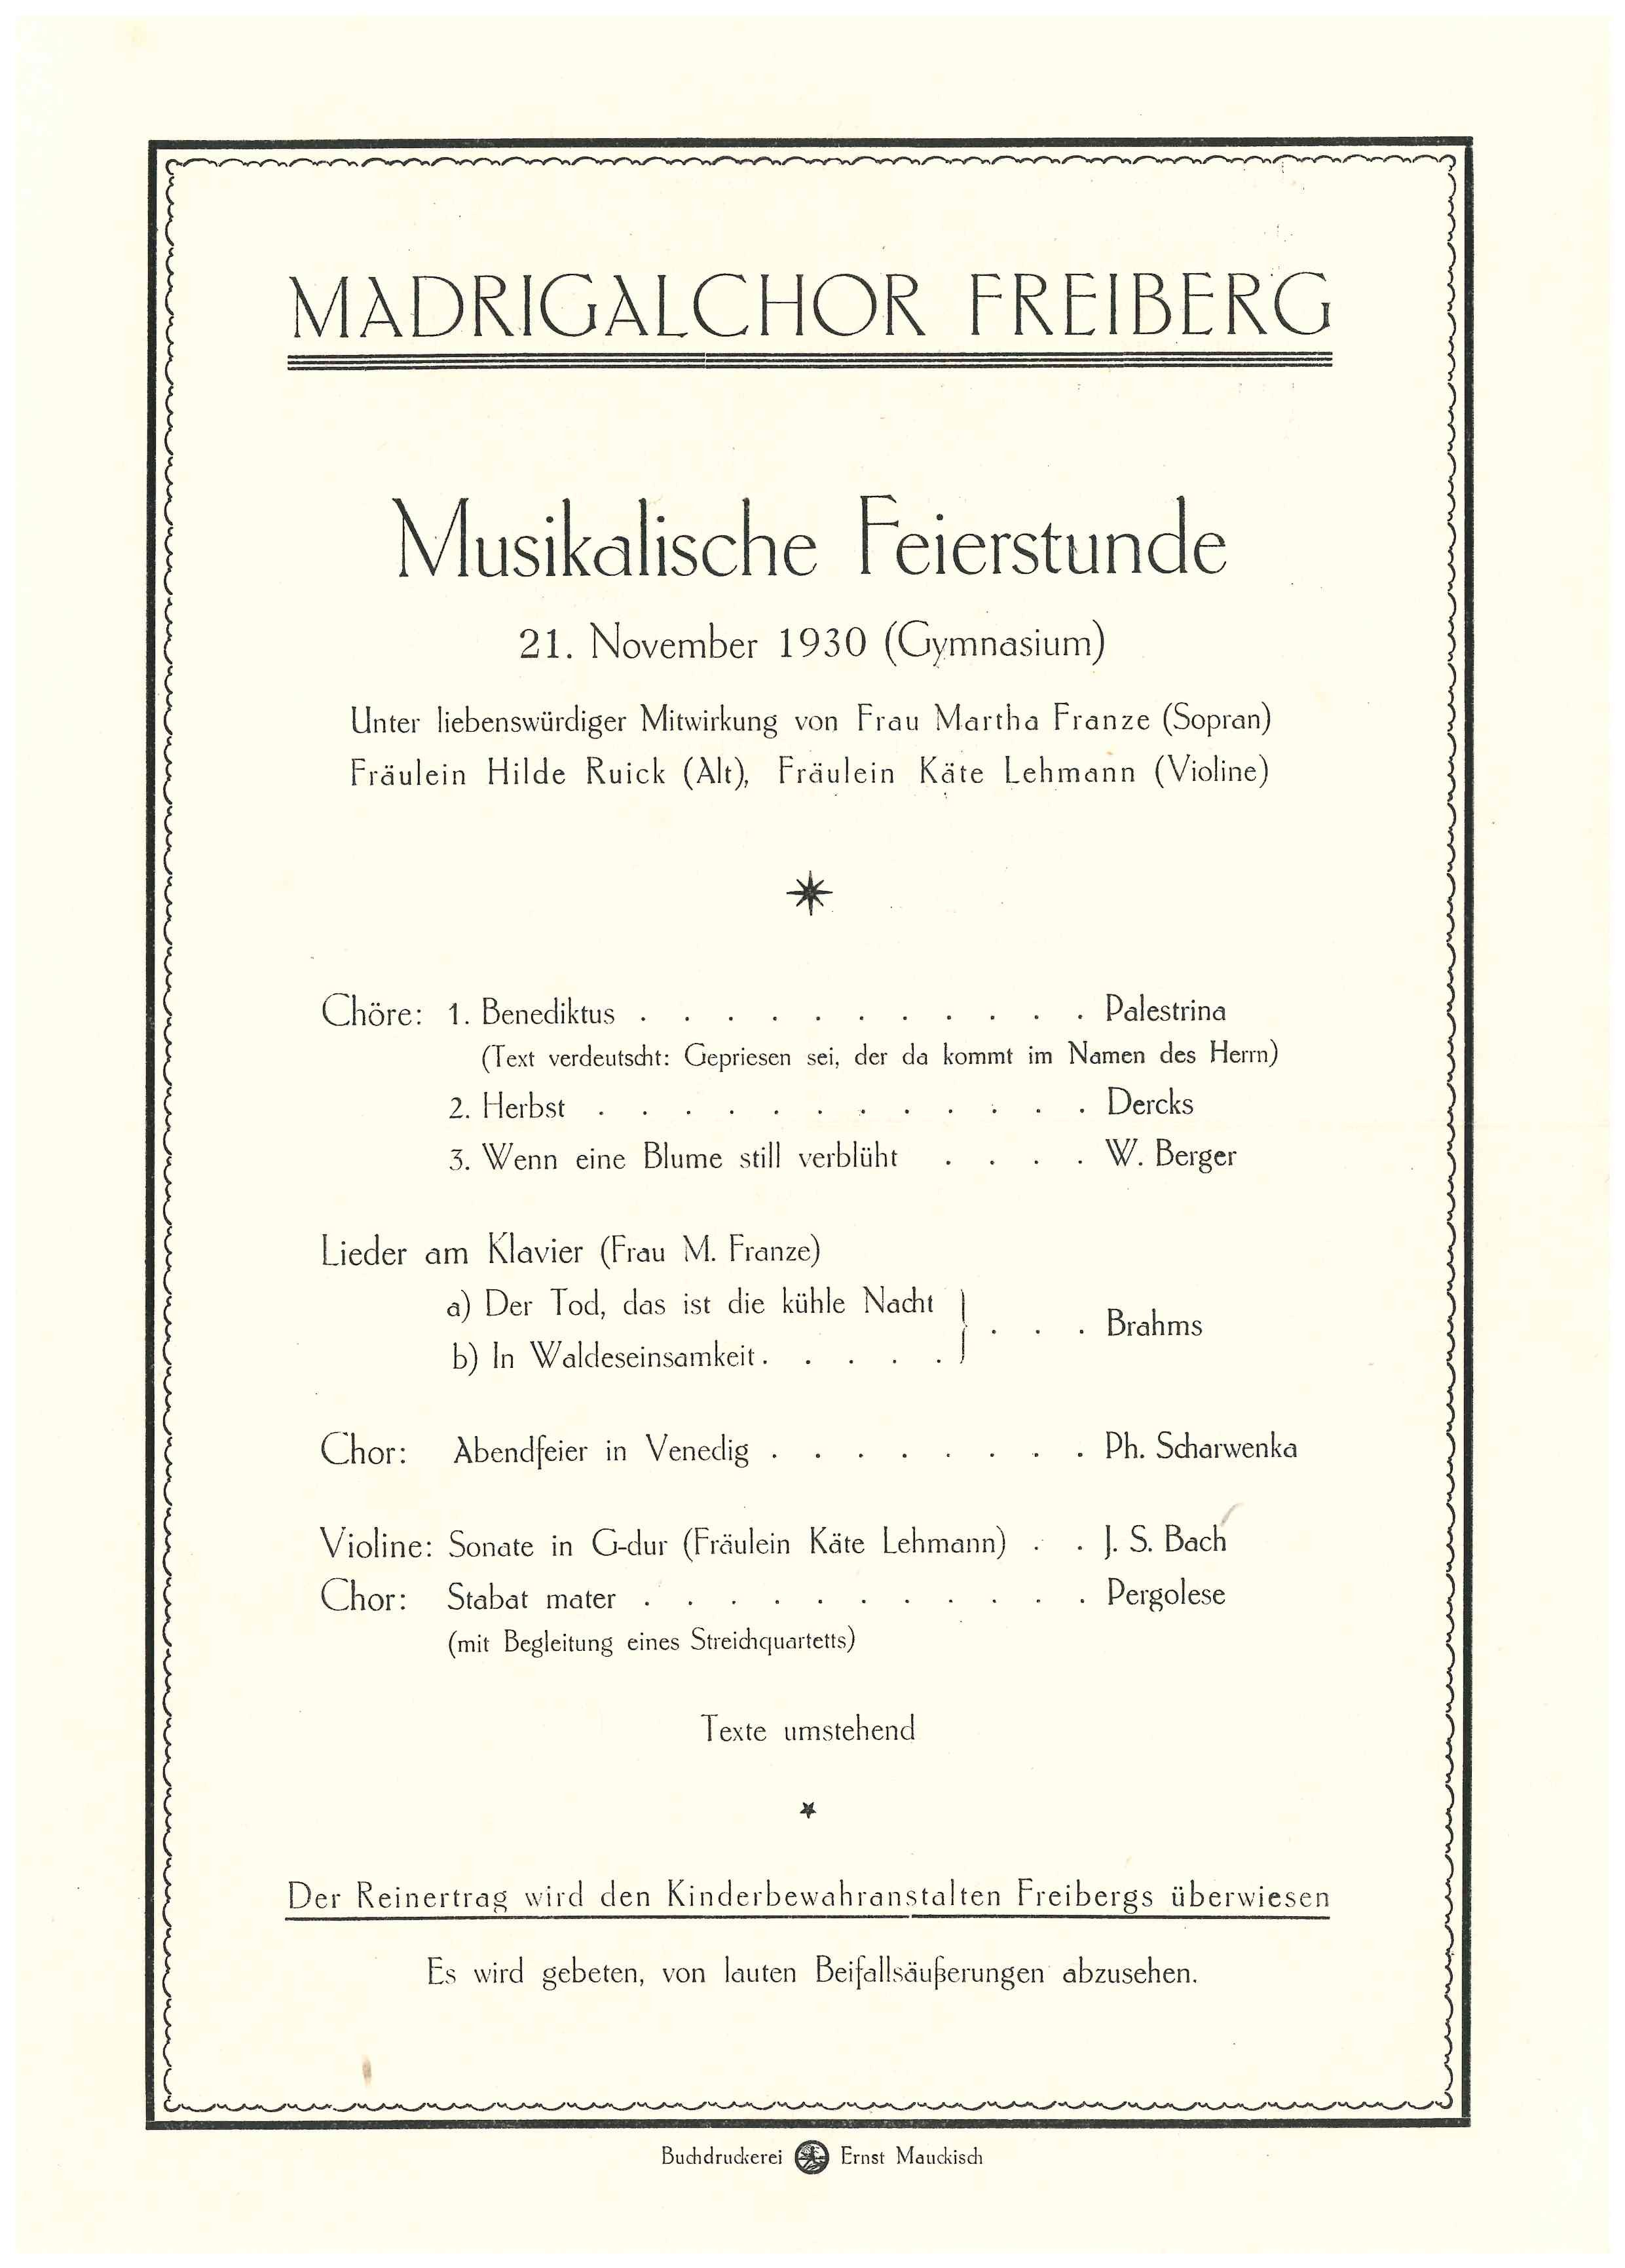 Programmblatt des Madrigalchors Freiberg zu einer "Musikalischen Feierstunde" am 21. November 1930 (Gymnasium) (Saxonia-Freiberg-Stiftung CC BY-NC-SA)